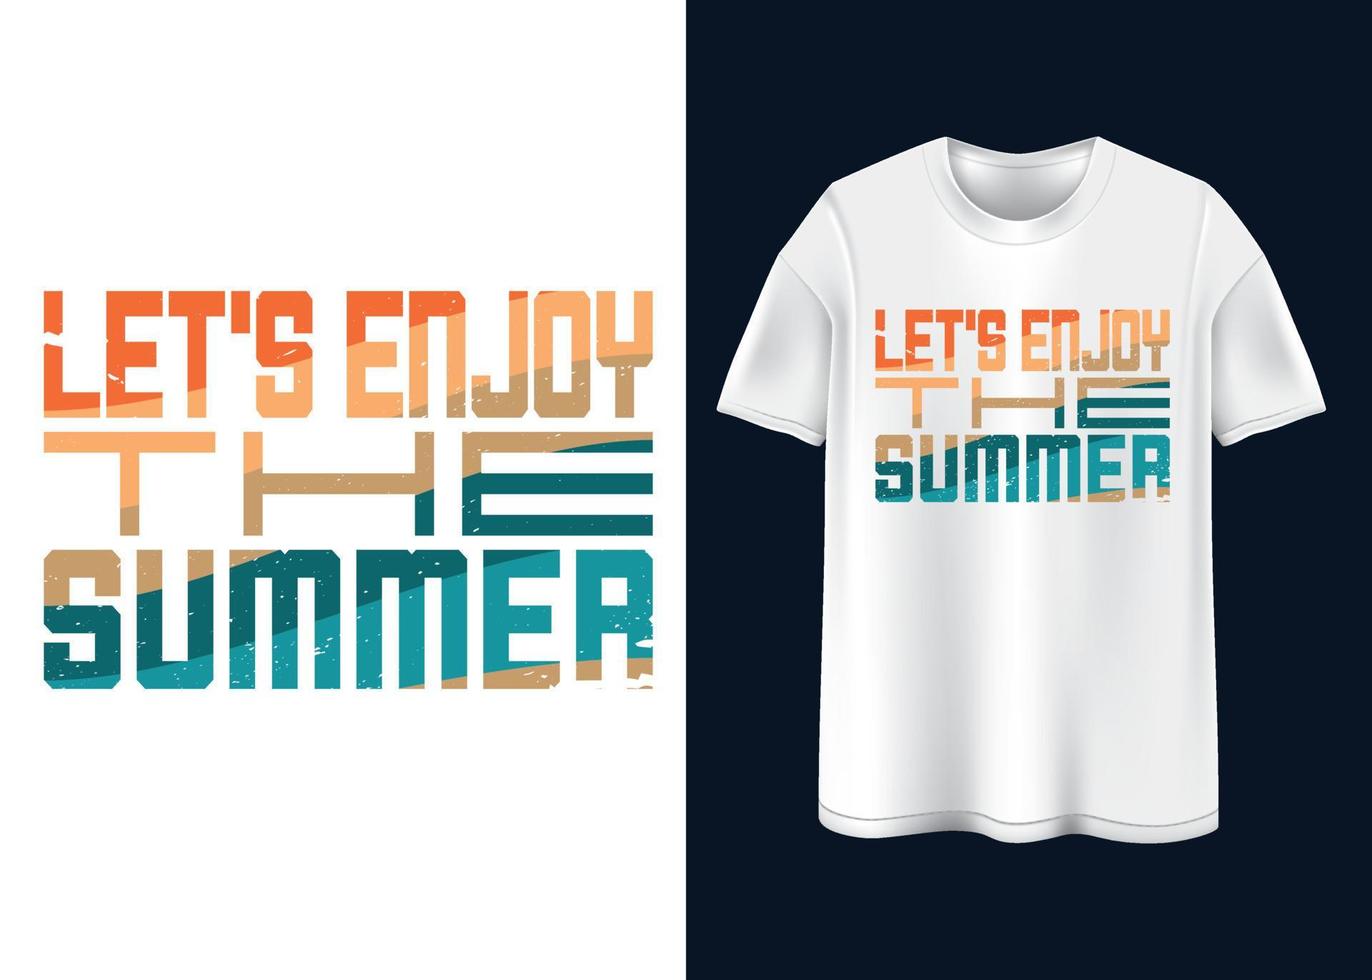 disfrutemos el diseño de la camiseta de verano. vector